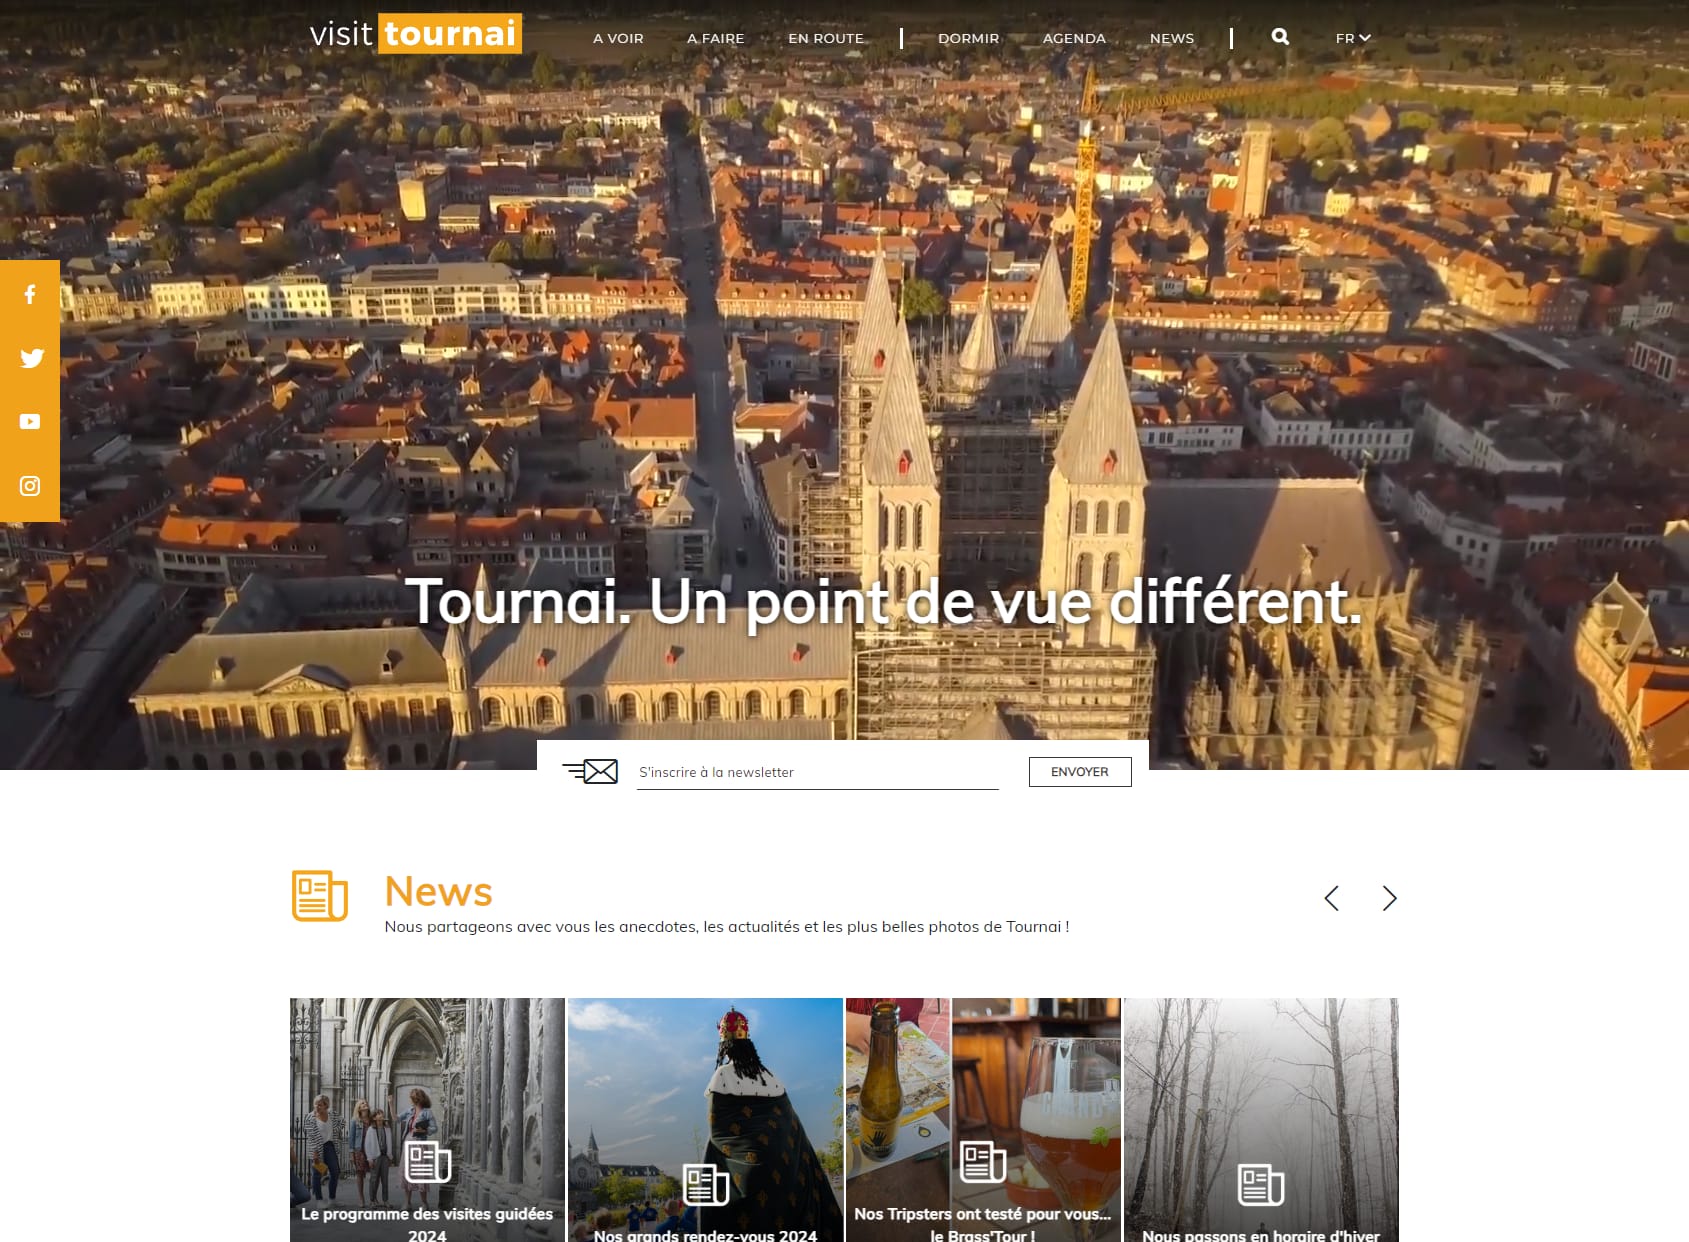 Tourist Office of Tournai - Tournai Visit